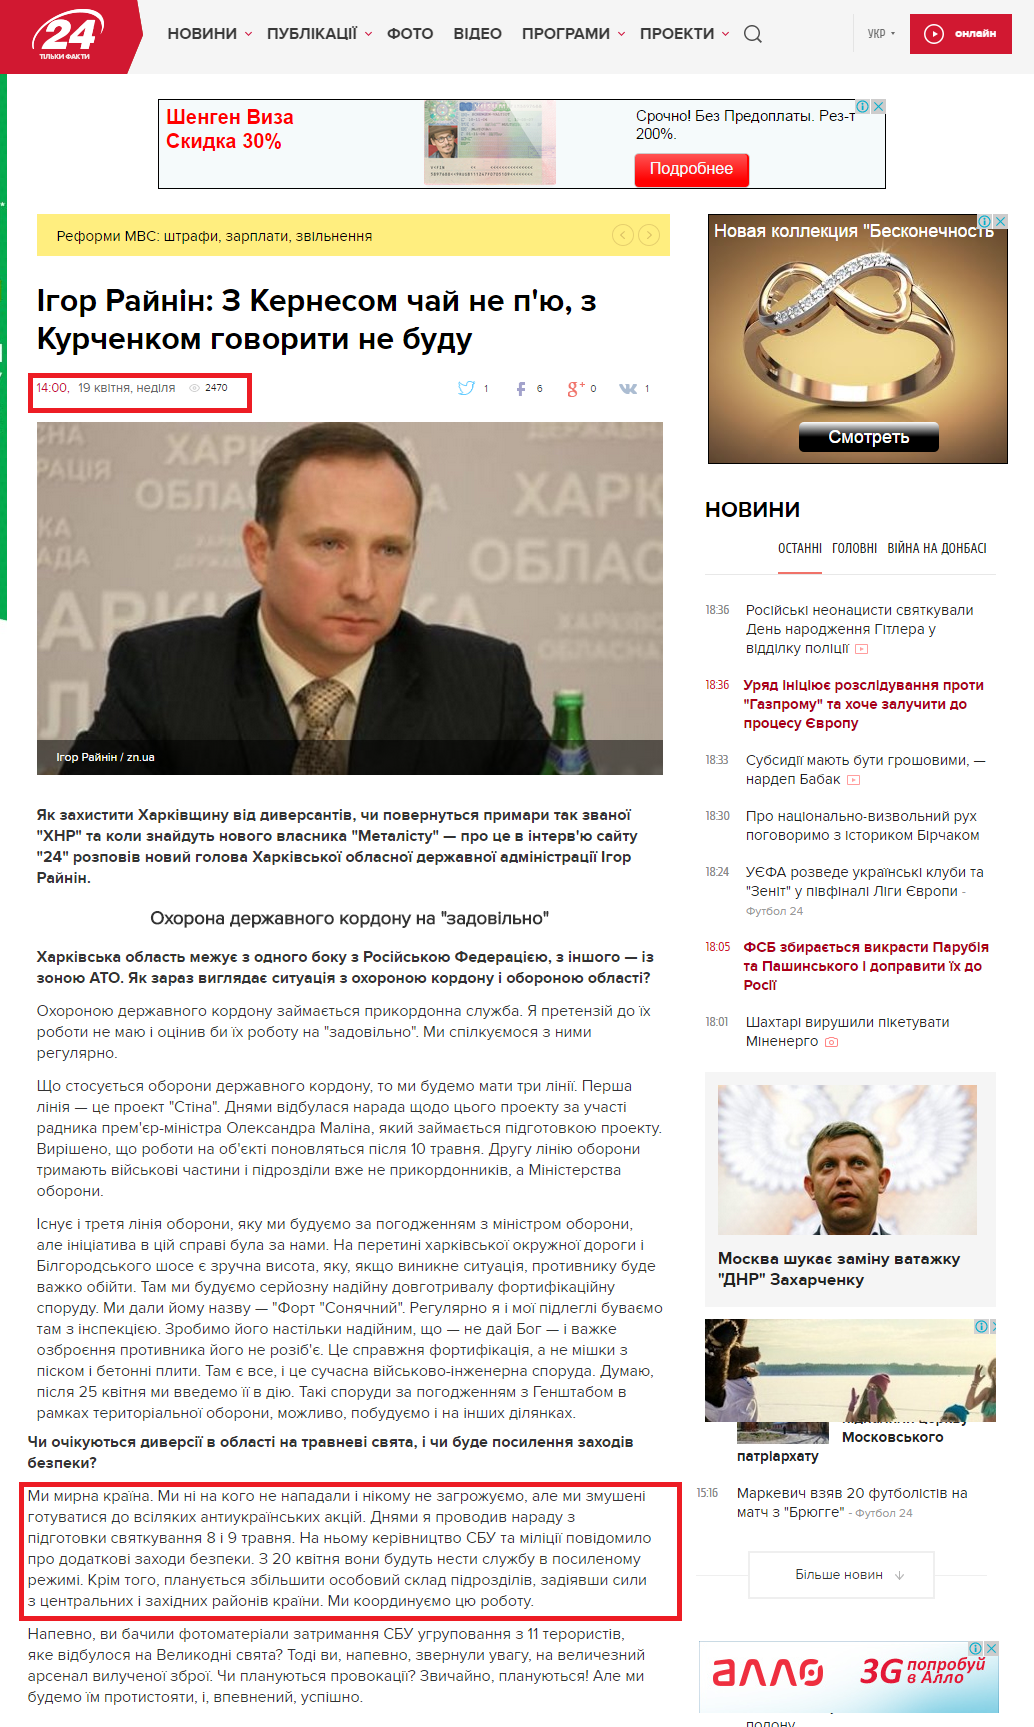 http://24tv.ua/news/showNews.do?igor_raynin_z_kernesom_chay_ne_pyu_z_kurchenkom_govoriti_ne_budu&objectId=566544